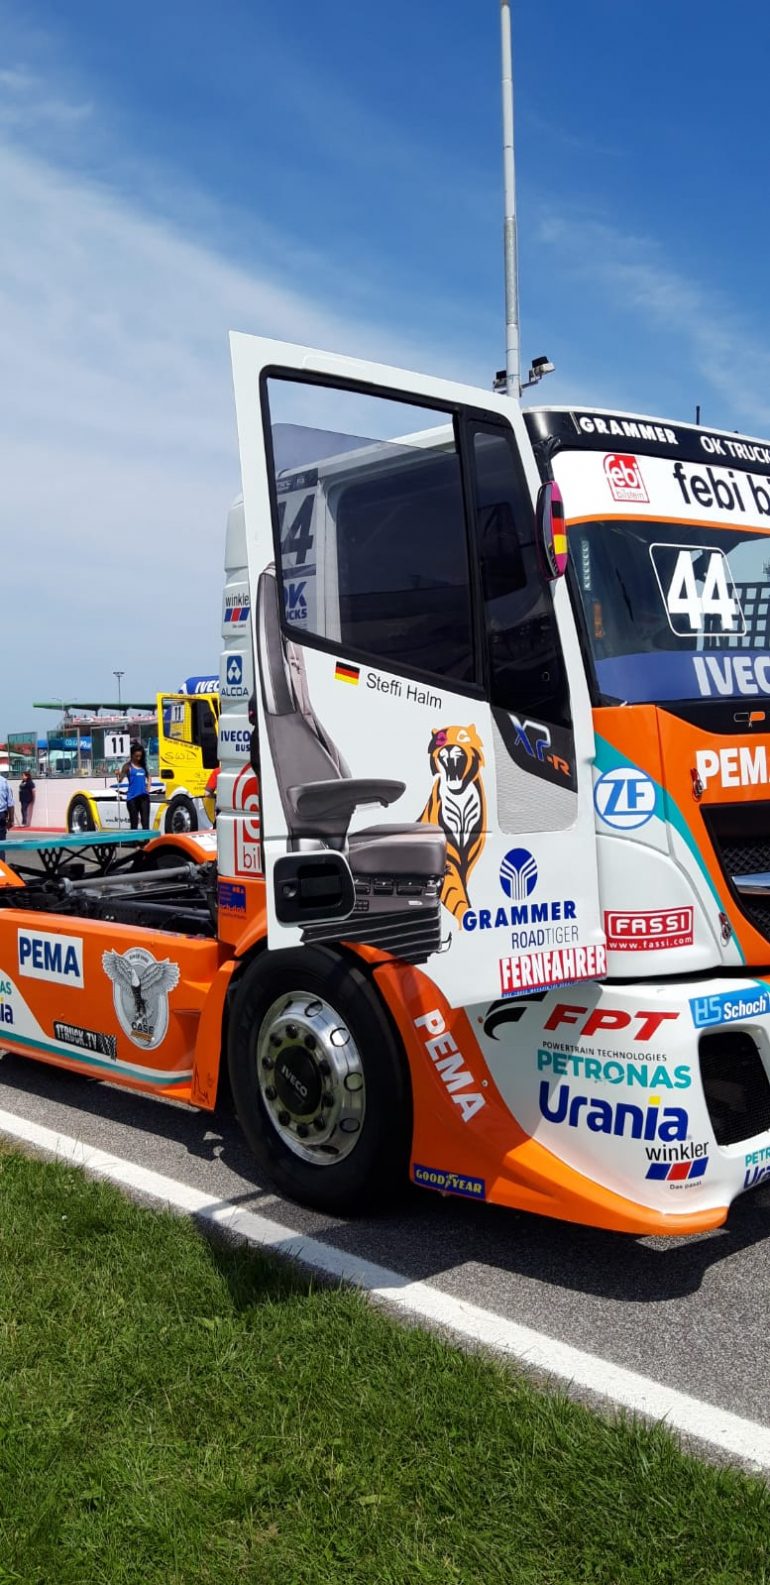 CASE sponsors Team Schwabentruck in the 2019 FIA European Truck Racing Championship